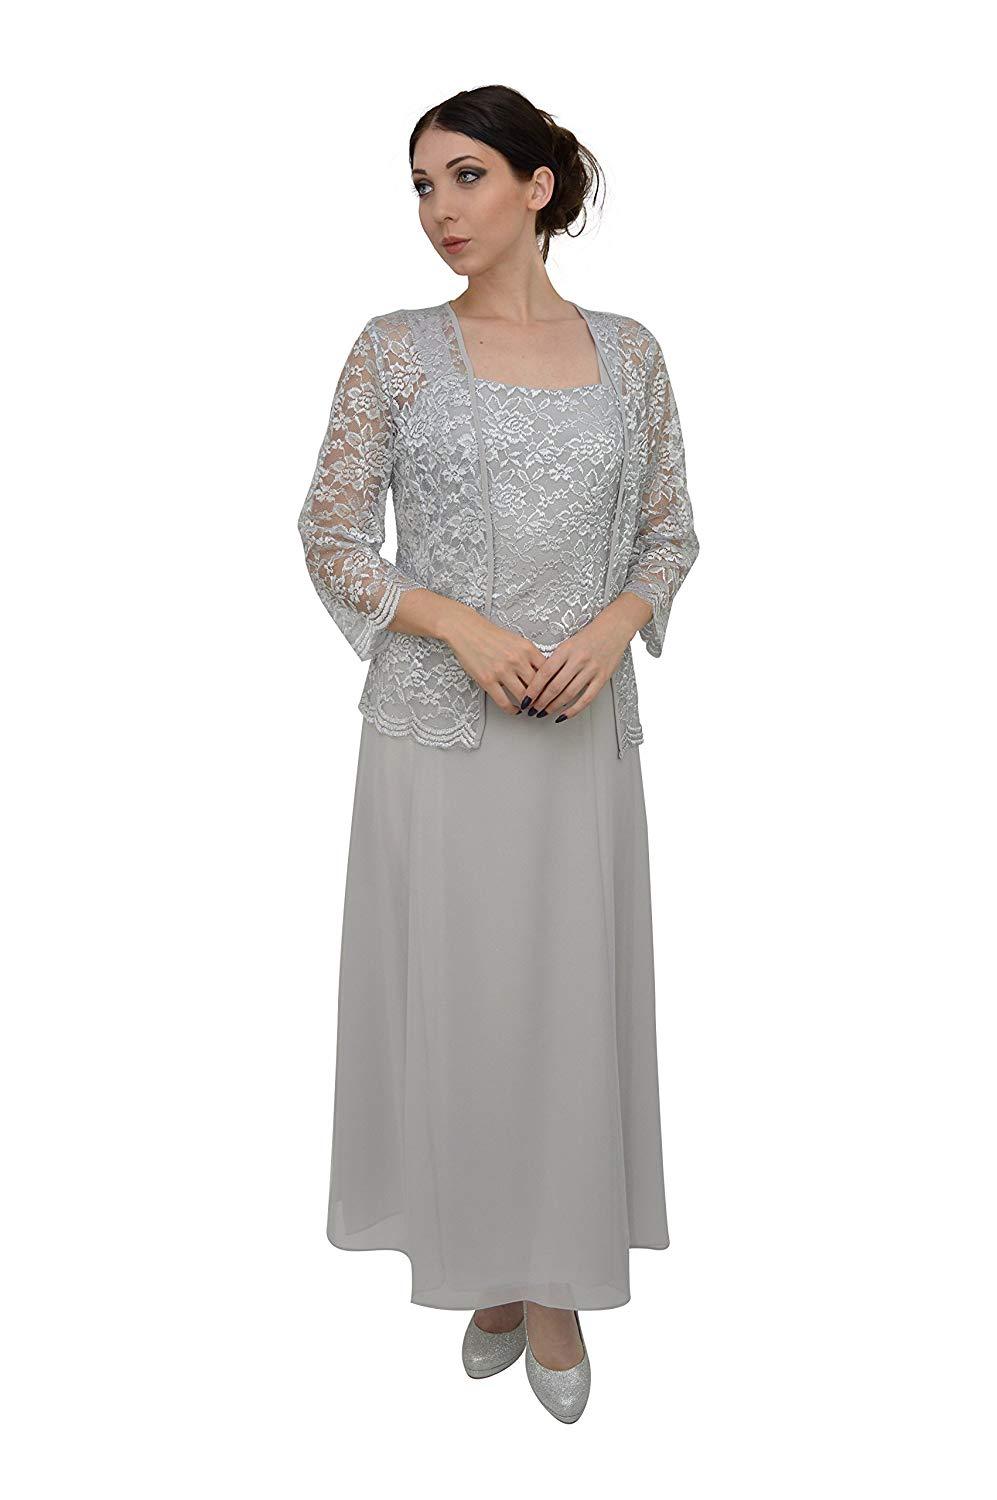 Black Long Mother of the Bride Formal Dress | DressOutlet for $32.99 ...